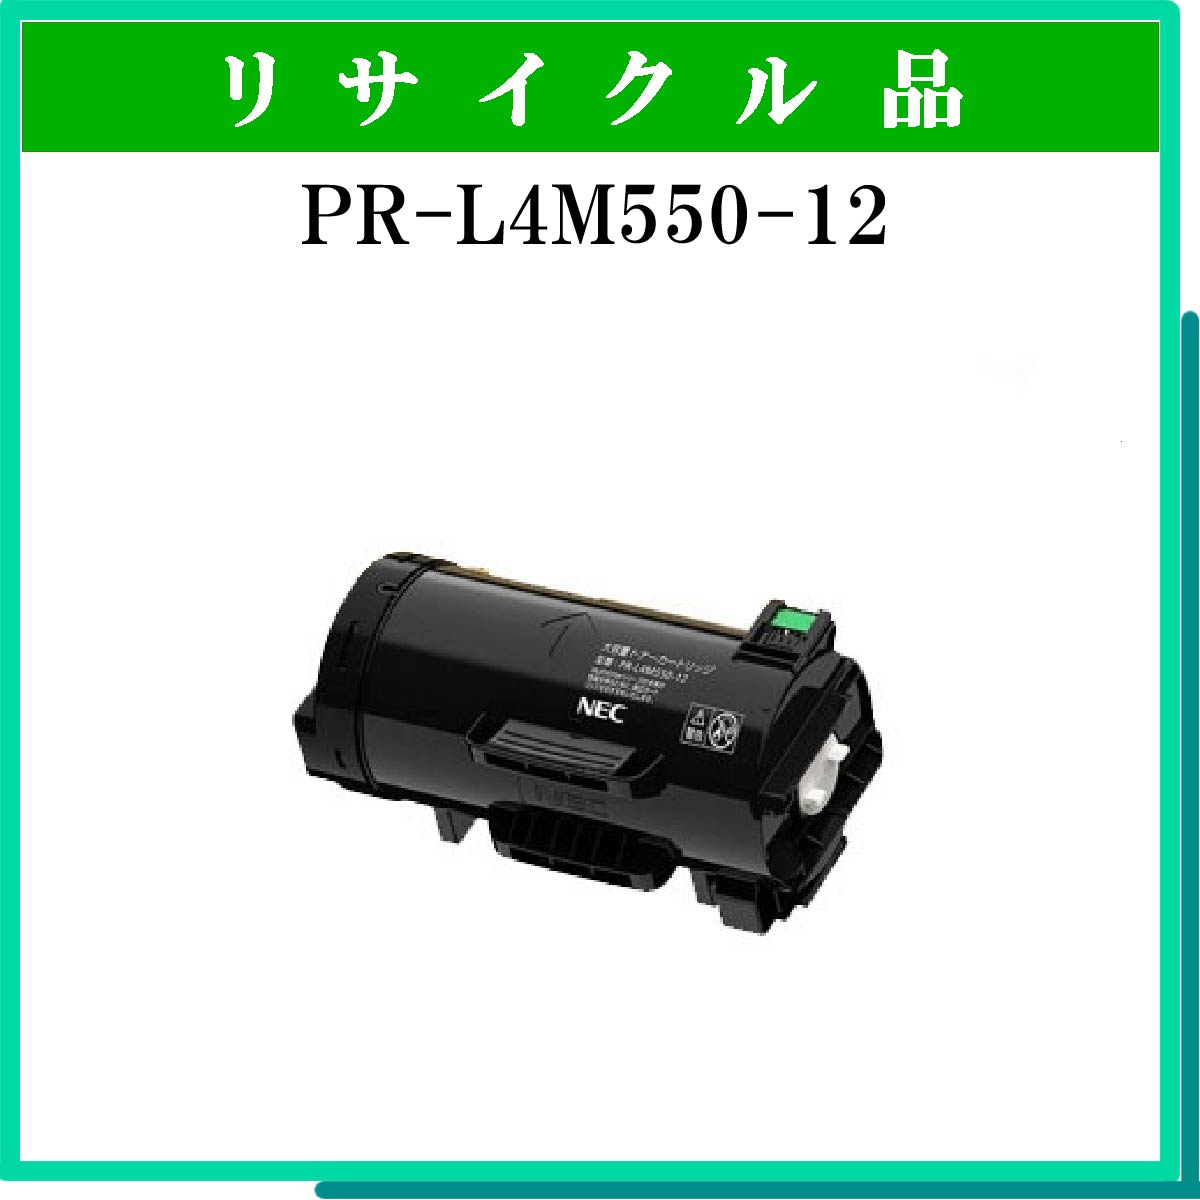 PR-L4M550-12